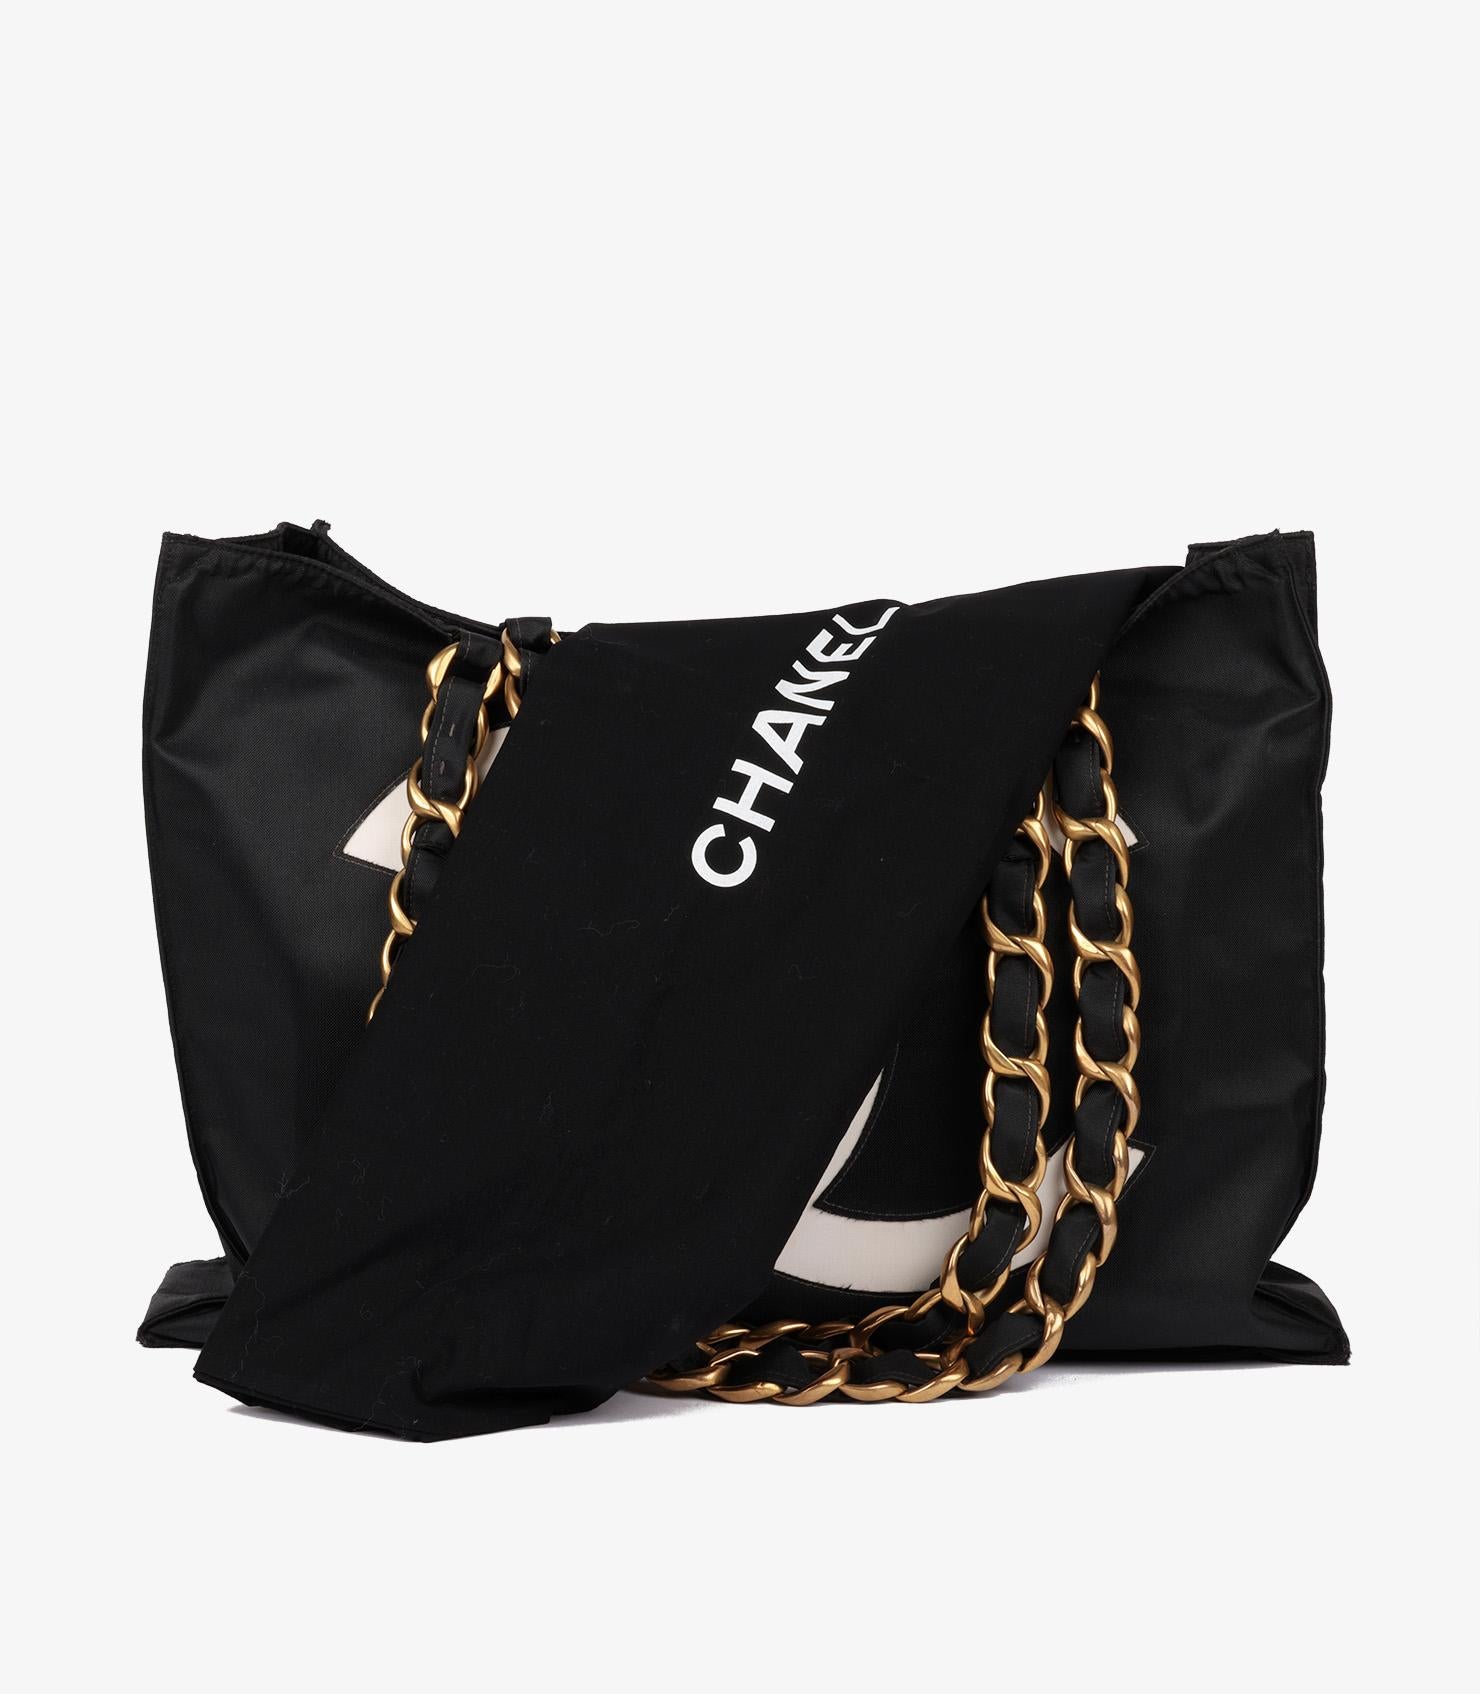 Chanel Black & White Nylon Vintage Large Timeless Shoulder Tote For Sale 5